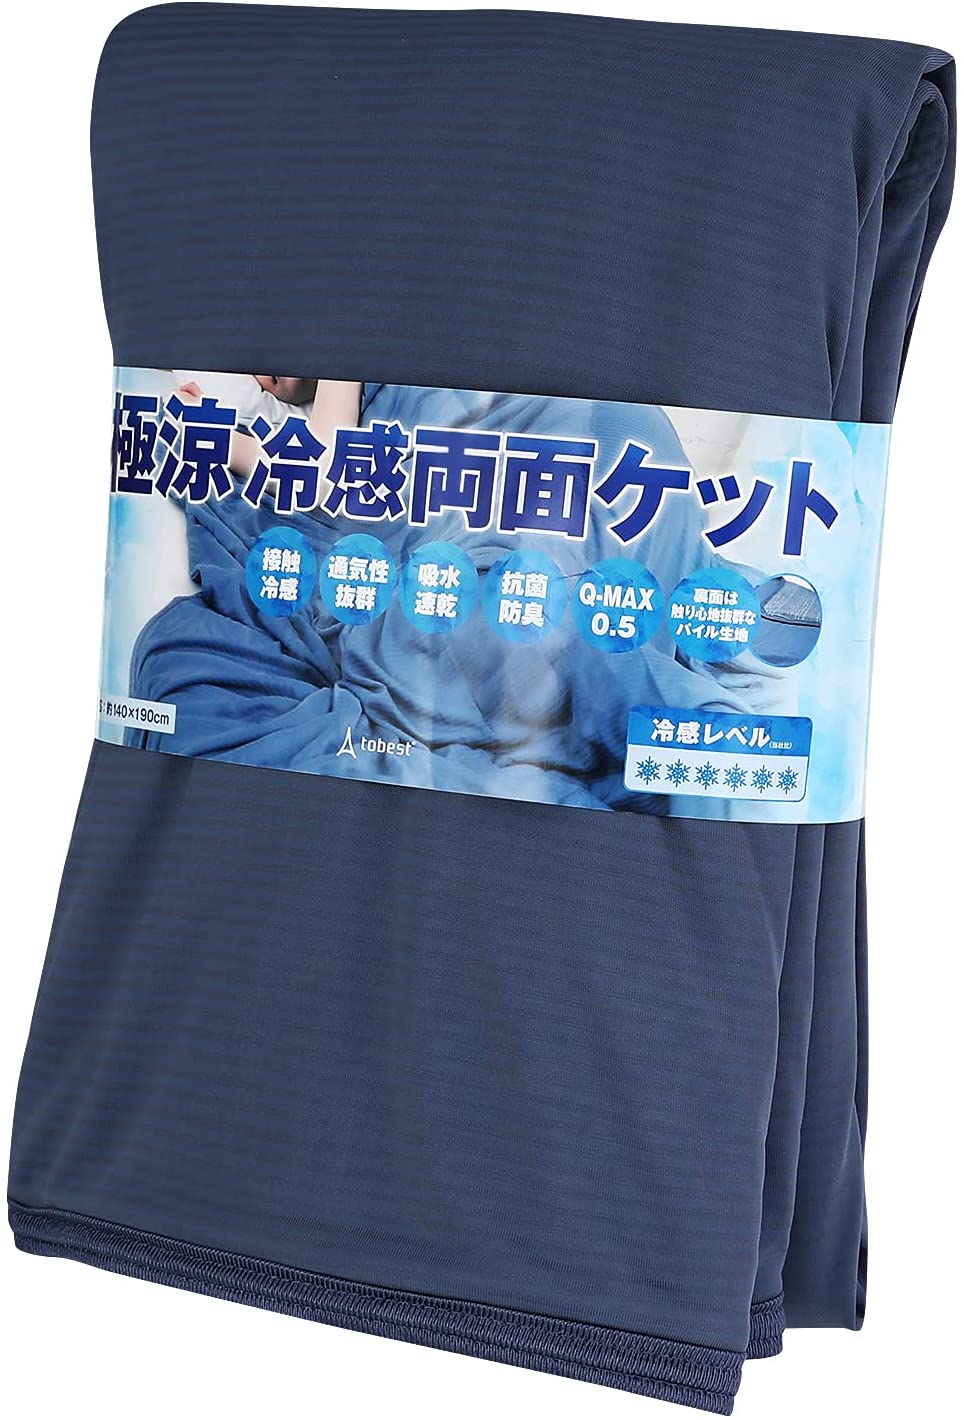 【日本代購】極涼毛巾毯雙面可用觸感清涼QMAX0.5 夏季涼爽抗菌涼感3.8倍涼爽瞬間冷卻涼爽吸水速乾可整體清洗tobest 藍色單人約140x190厘米